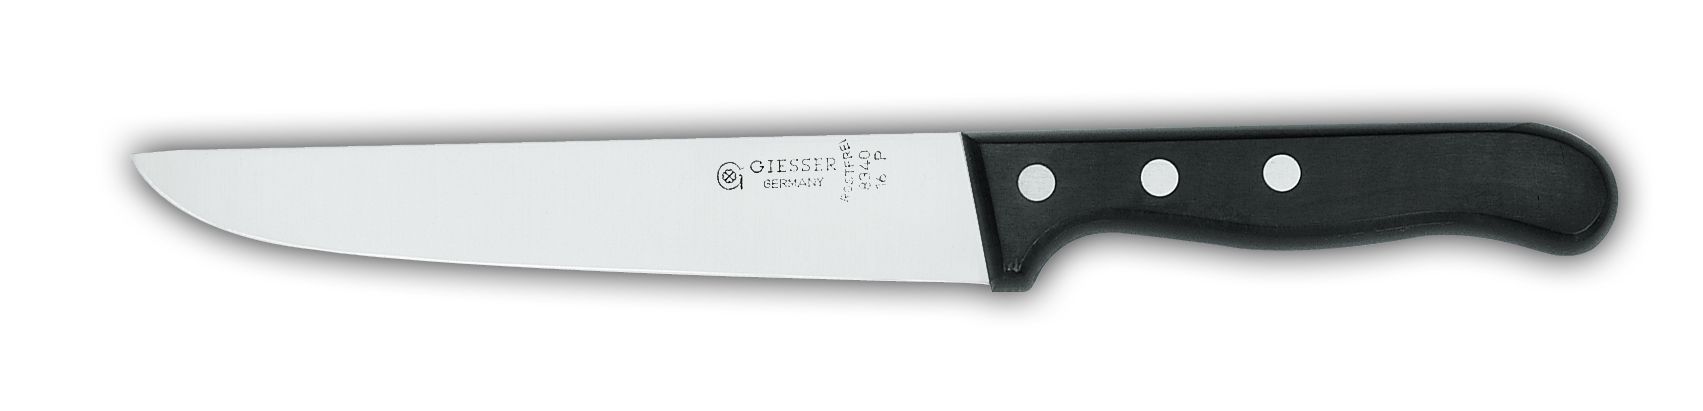 Нож поварской 8340p  рукоятка из РОМ, 16 см,  черная рукоятка